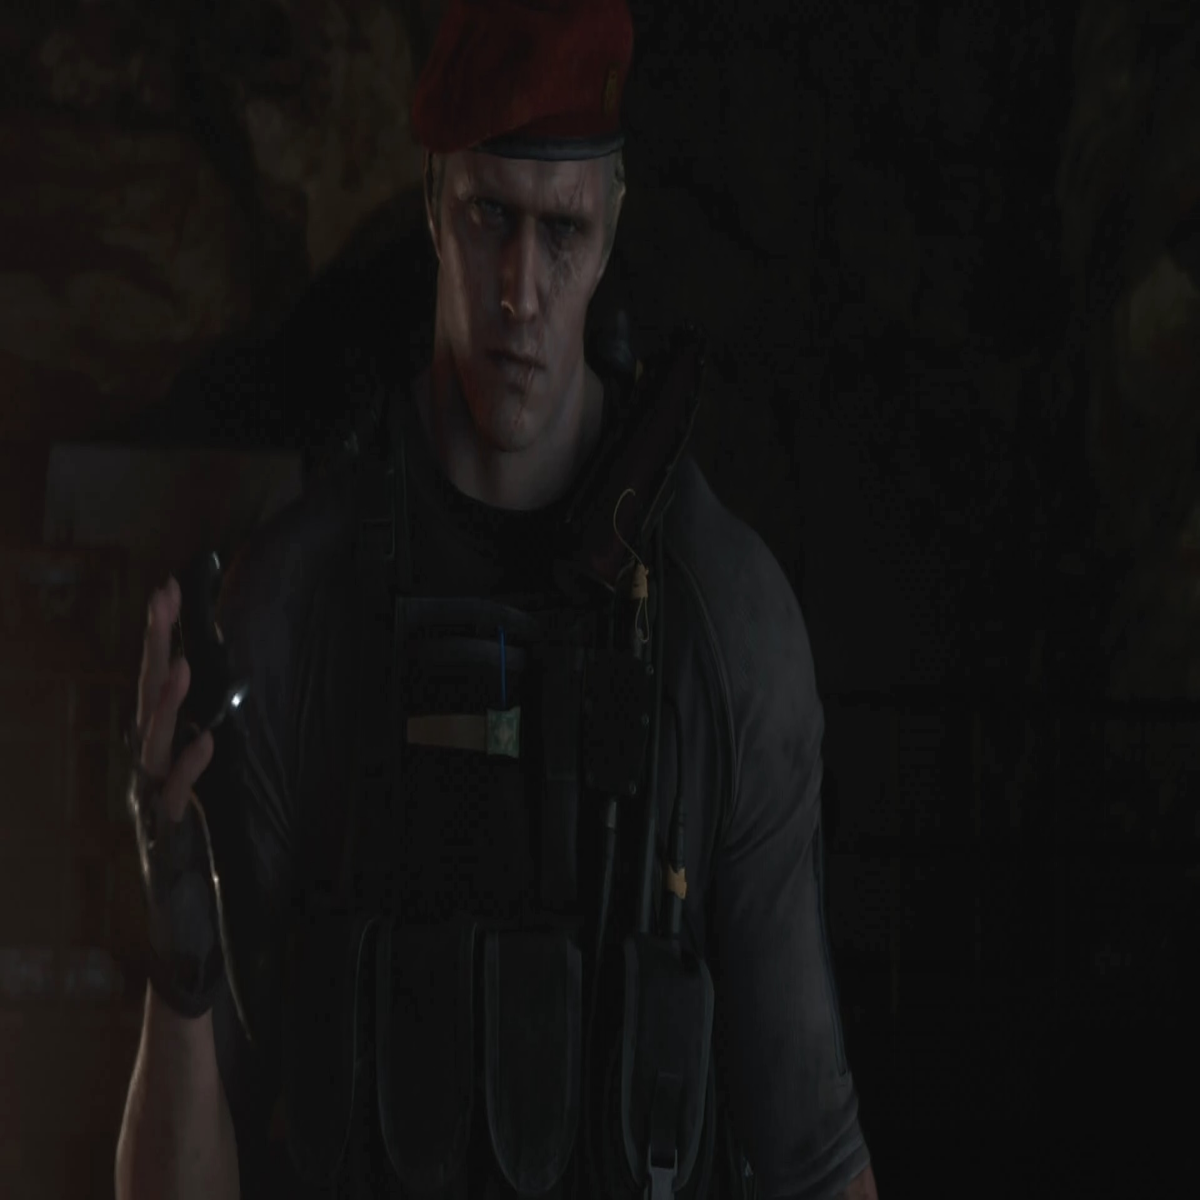 How to kill Krauser in Resident Evil 4 video game - Quora